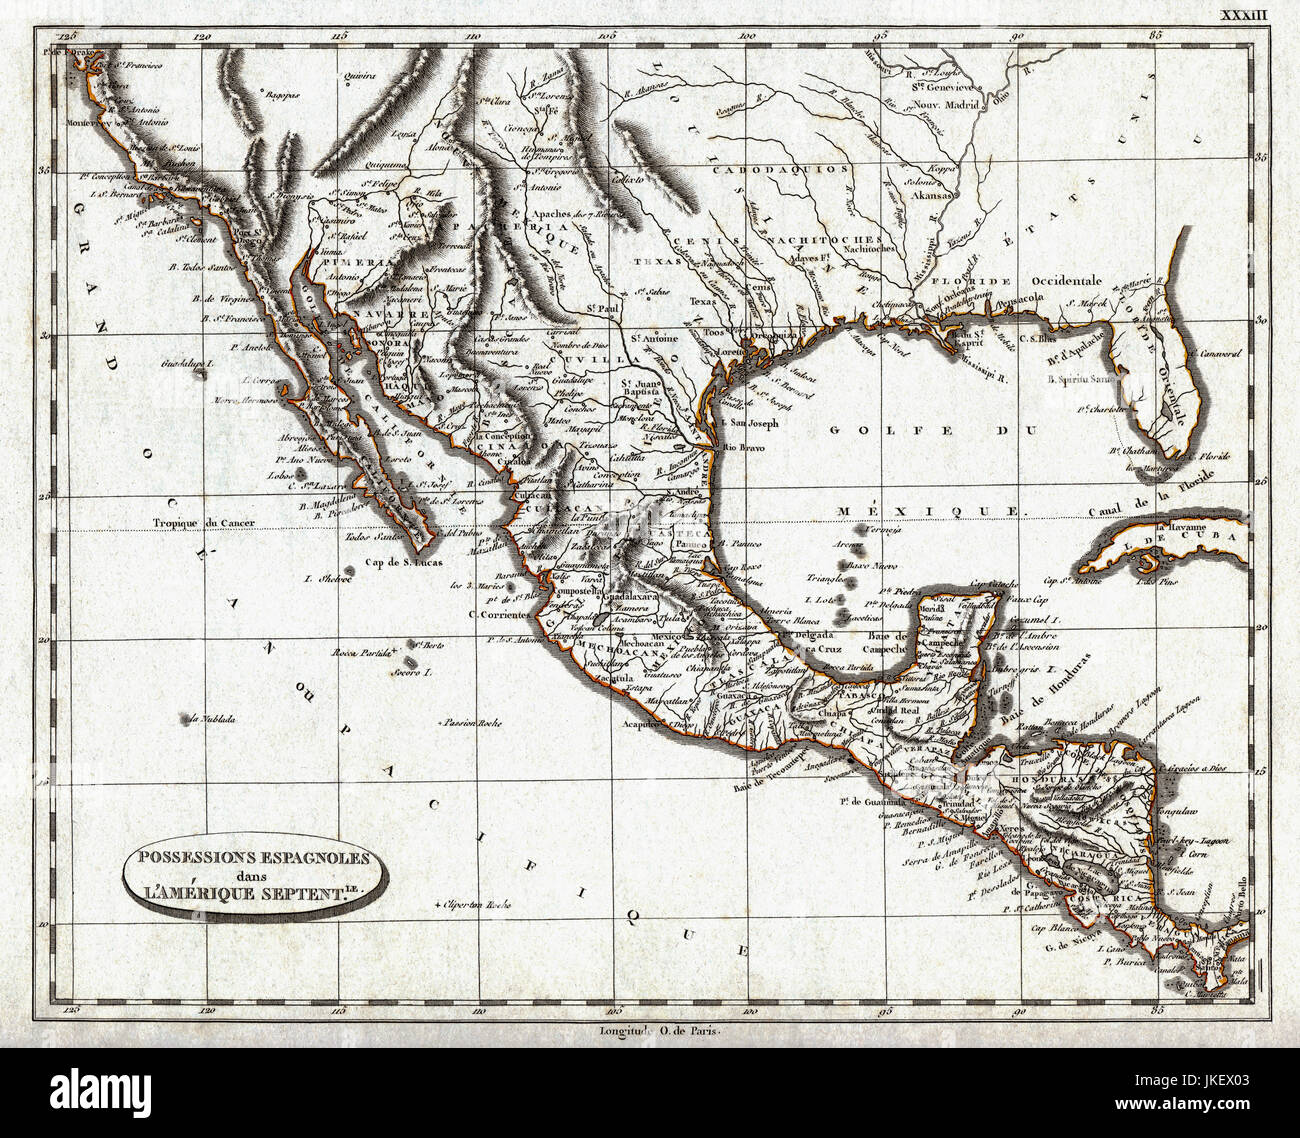 1804 pinkerton carte de l'Amérique espagnole coloniale, y compris le Mexique, la Californie, le Texas, l'Arizona, de la Floride, au Guatemala Banque D'Images